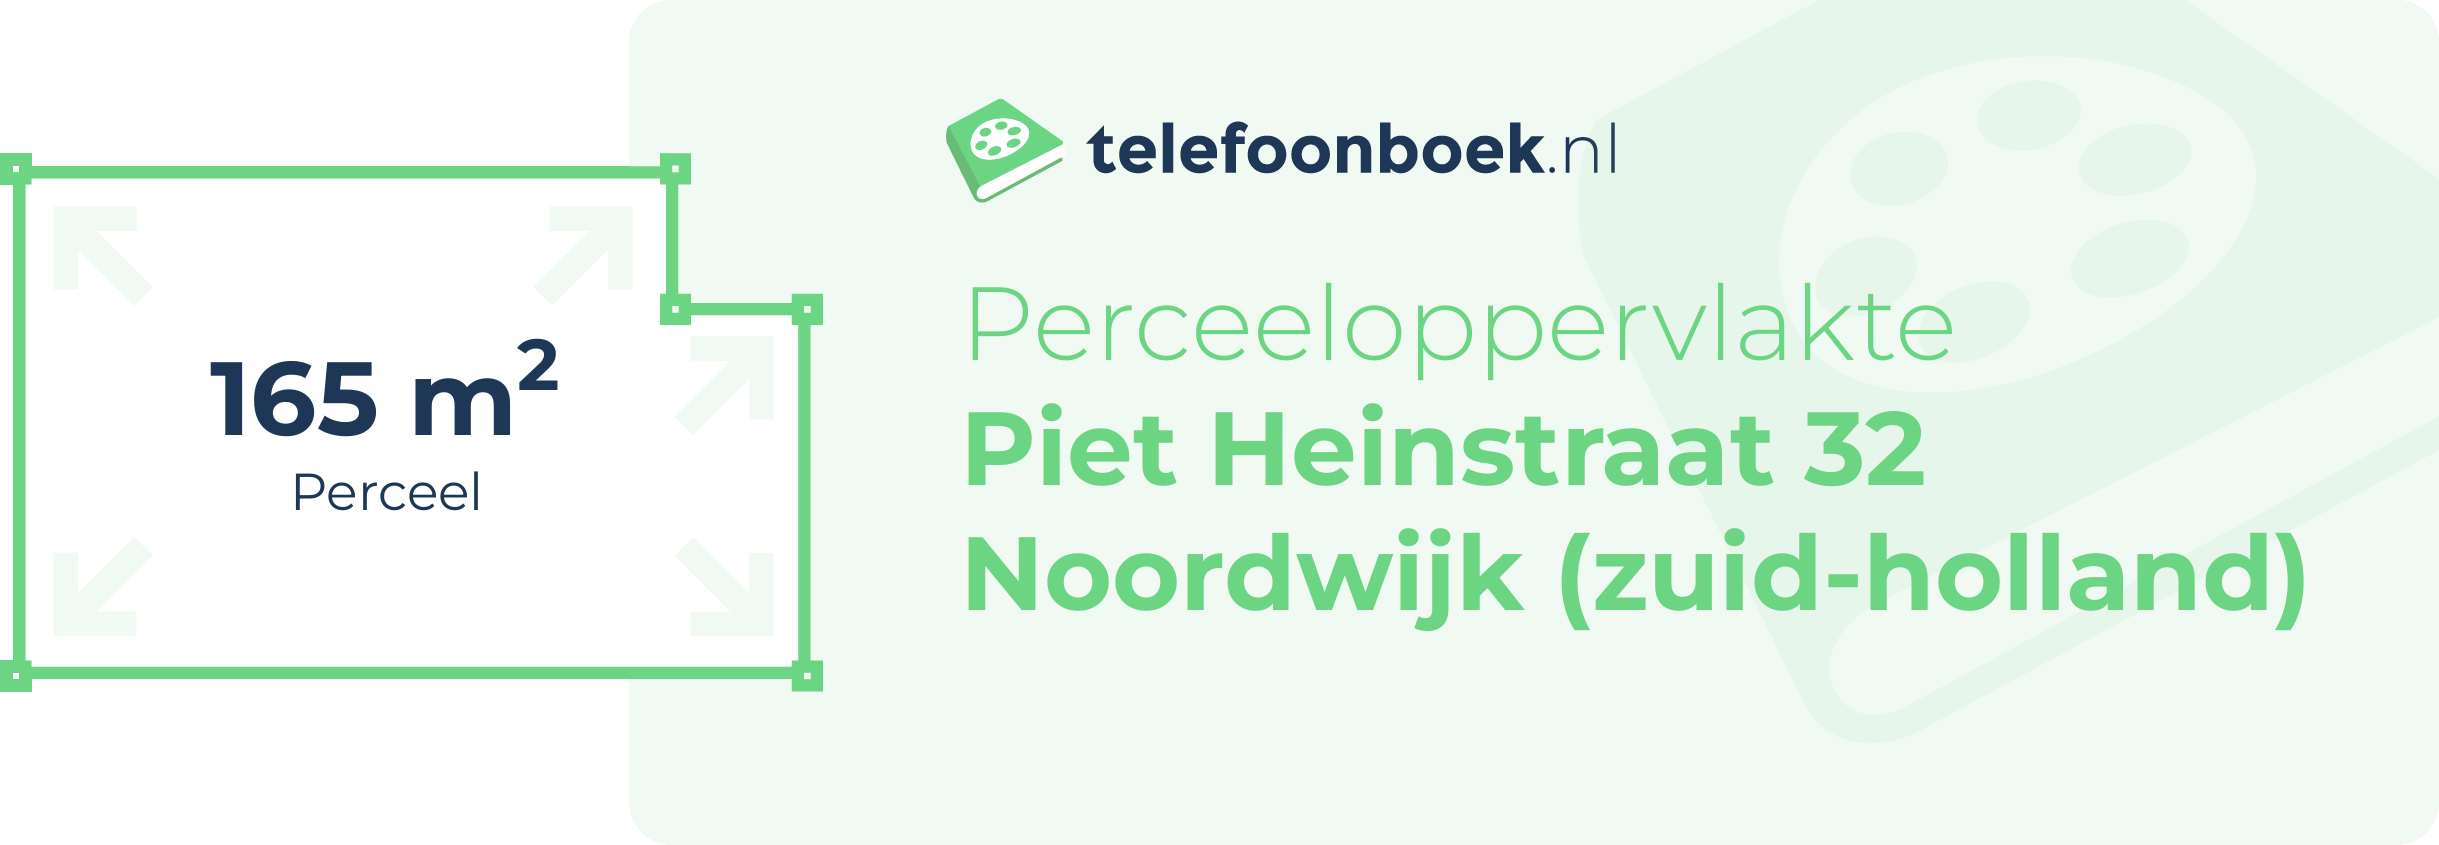 Perceeloppervlakte Piet Heinstraat 32 Noordwijk (Zuid-Holland)